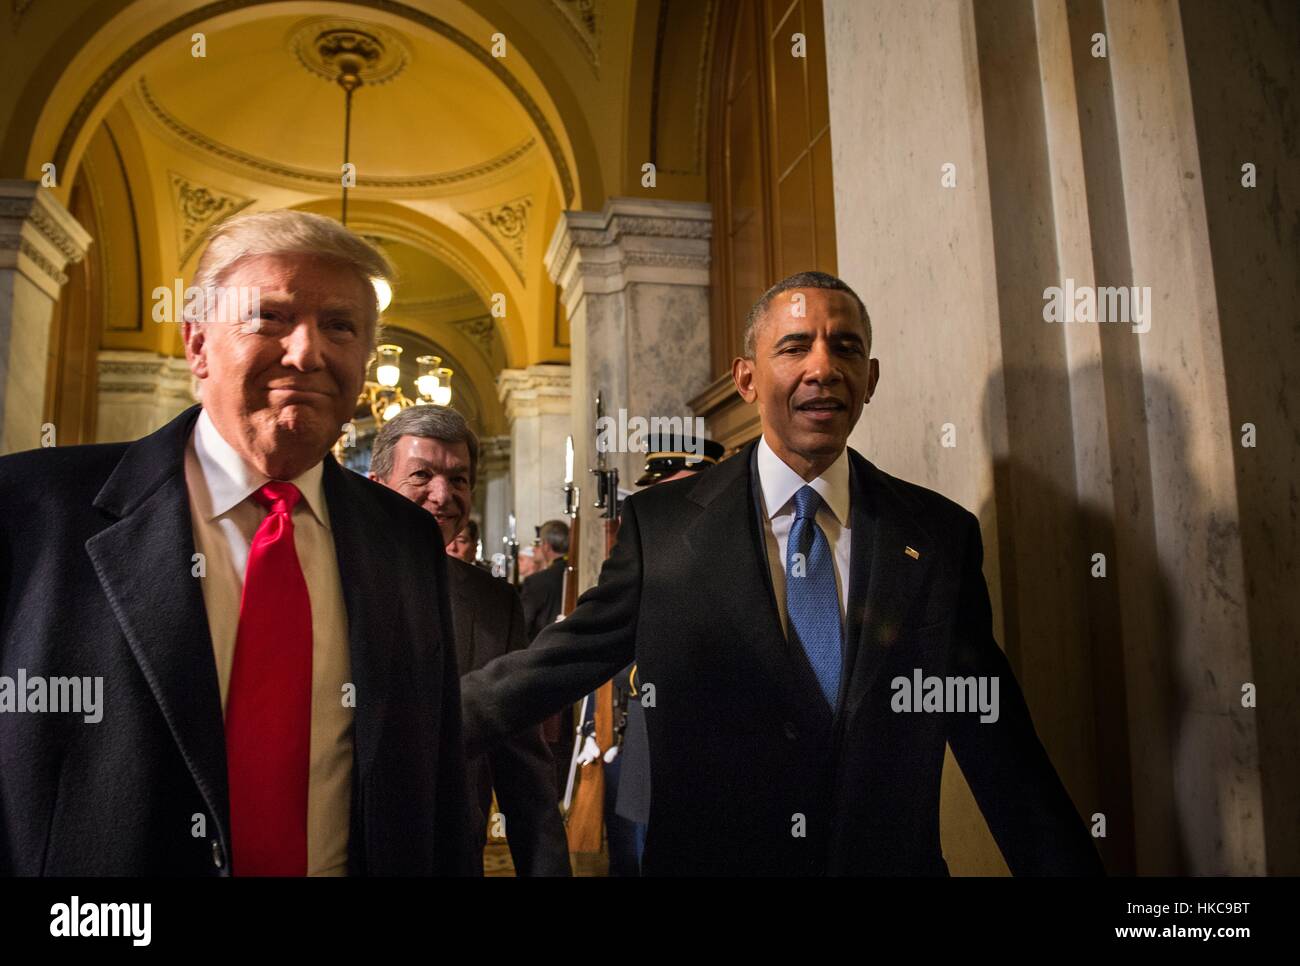 Le président américain Barack Obama et le président élu, Donald Trump arrivent à la capitale américaine pour la 58e Cérémonie d'investiture le 20 janvier 2017 à Washington, DC. Banque D'Images